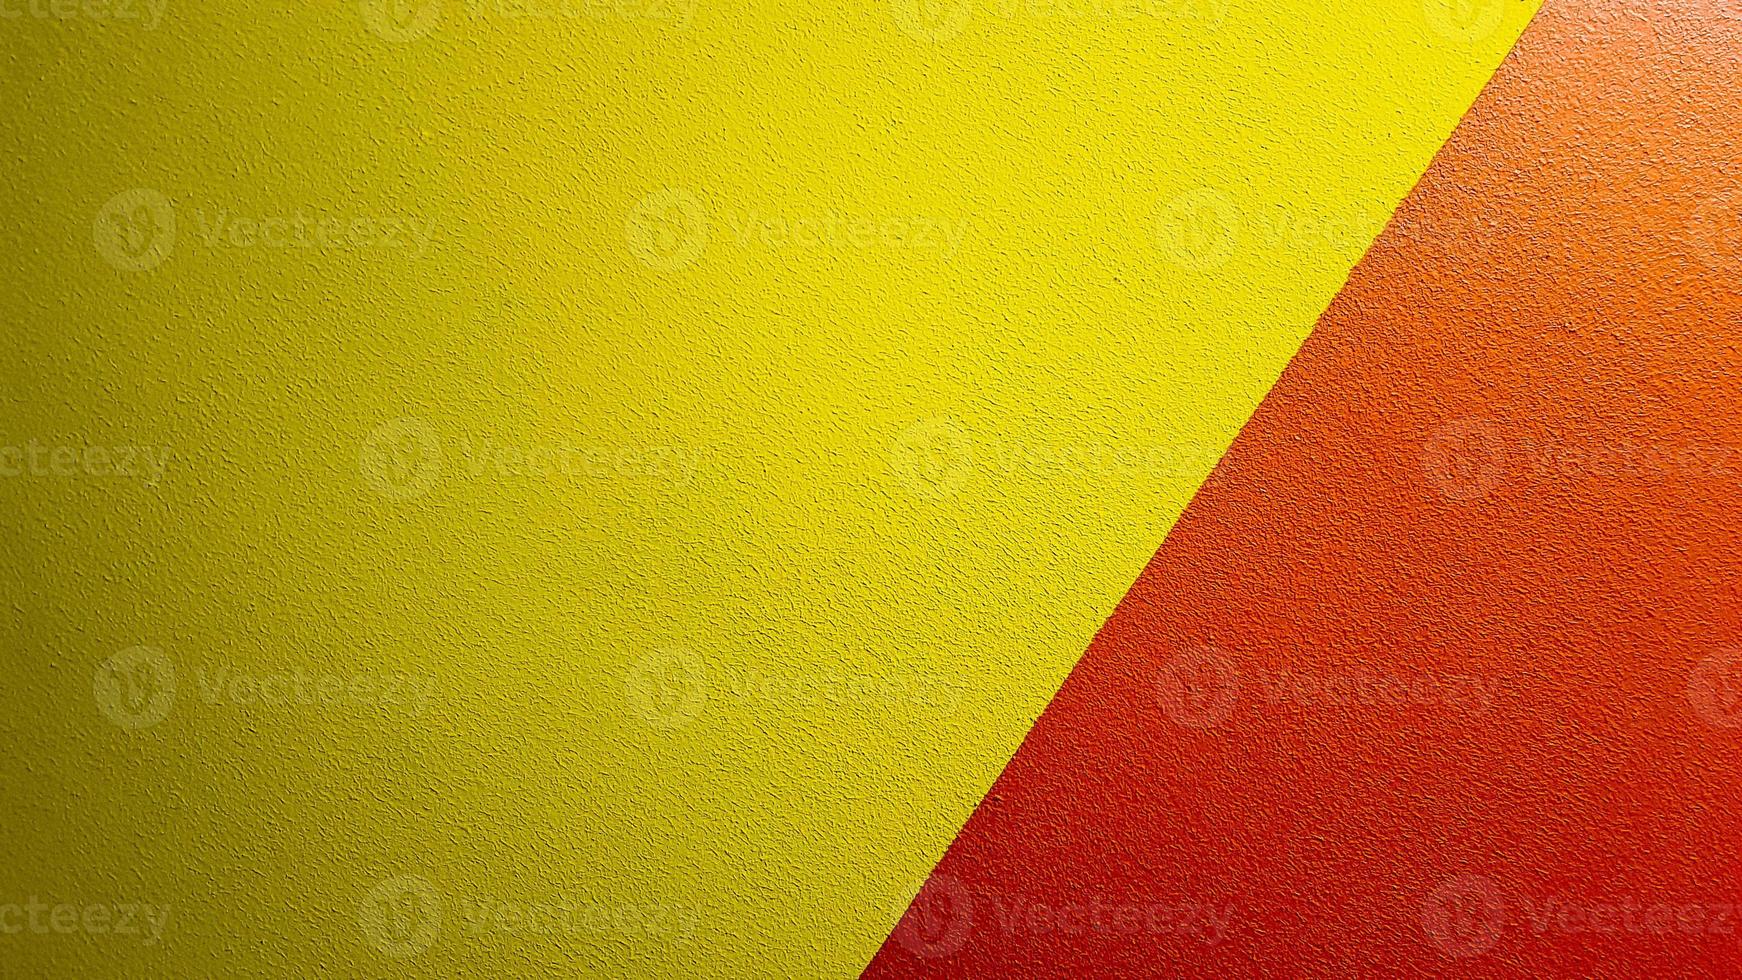 Fondo de grunge abstracto de textura de pared pintada de rojo y amarillo con espacio de copia. patrón geométrico abstracto en la pared. la pared está dividida en bordes de diferentes colores foto